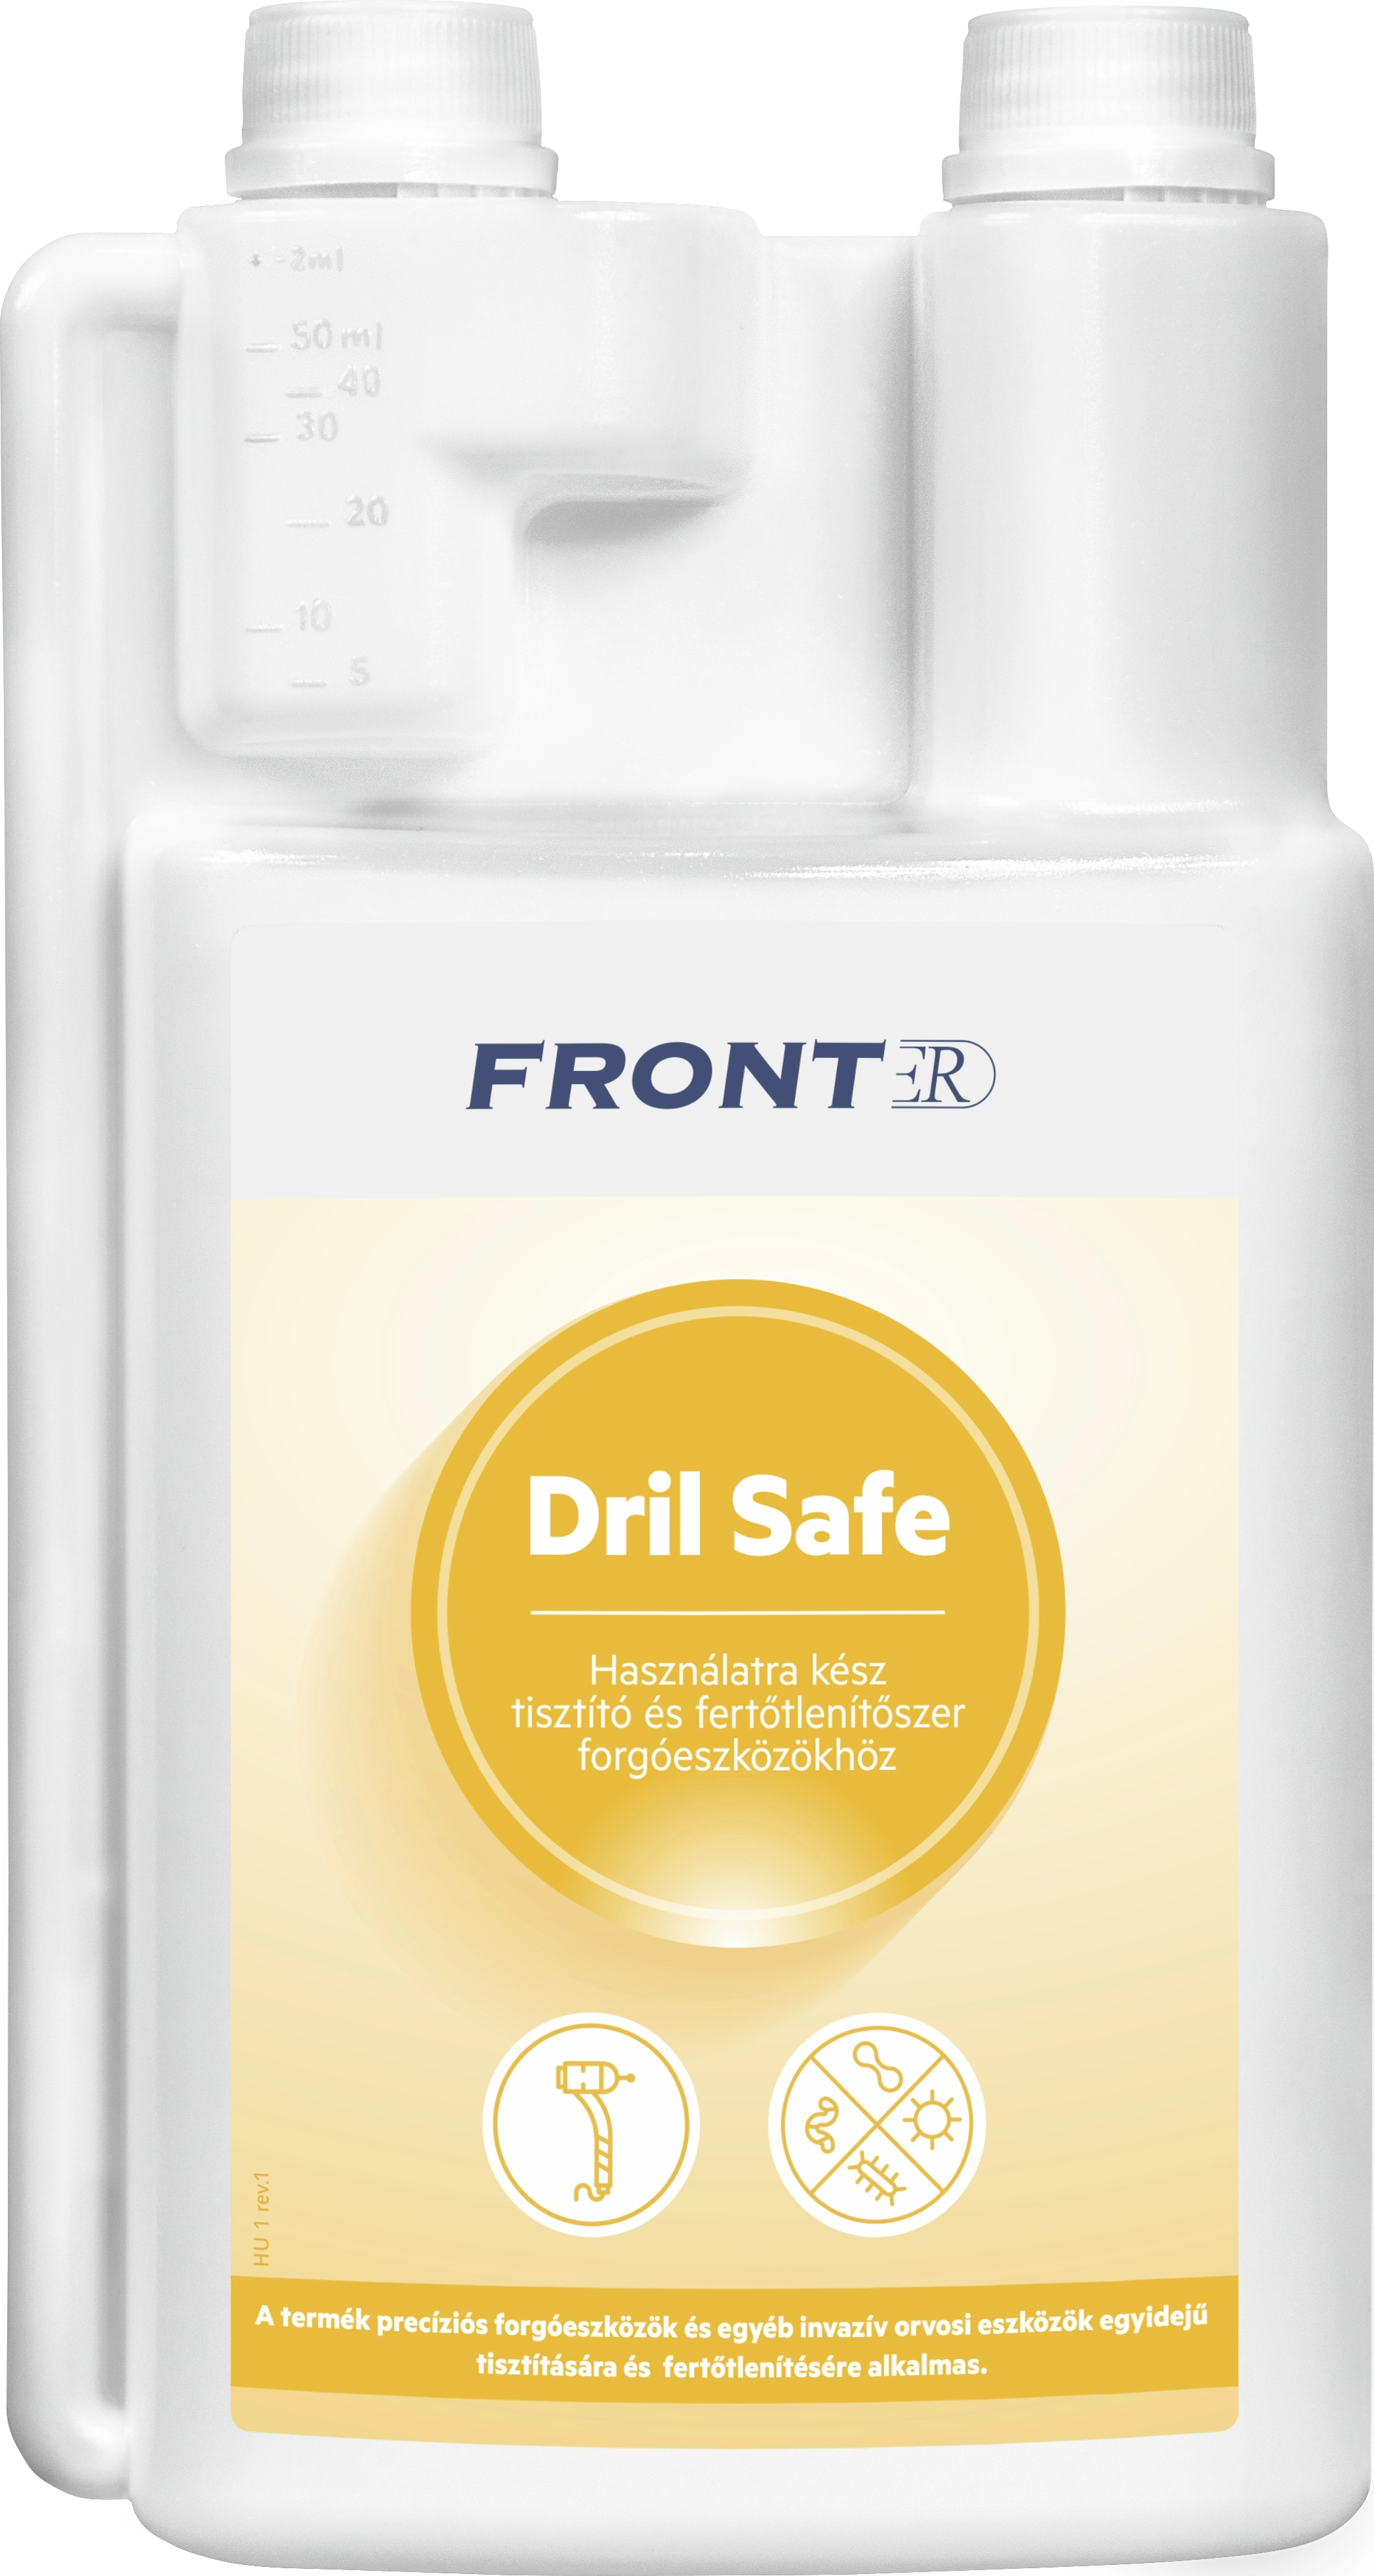 FrontER DrilSafe (1L) fogászati fúrófertőtlenítő, 1 liter